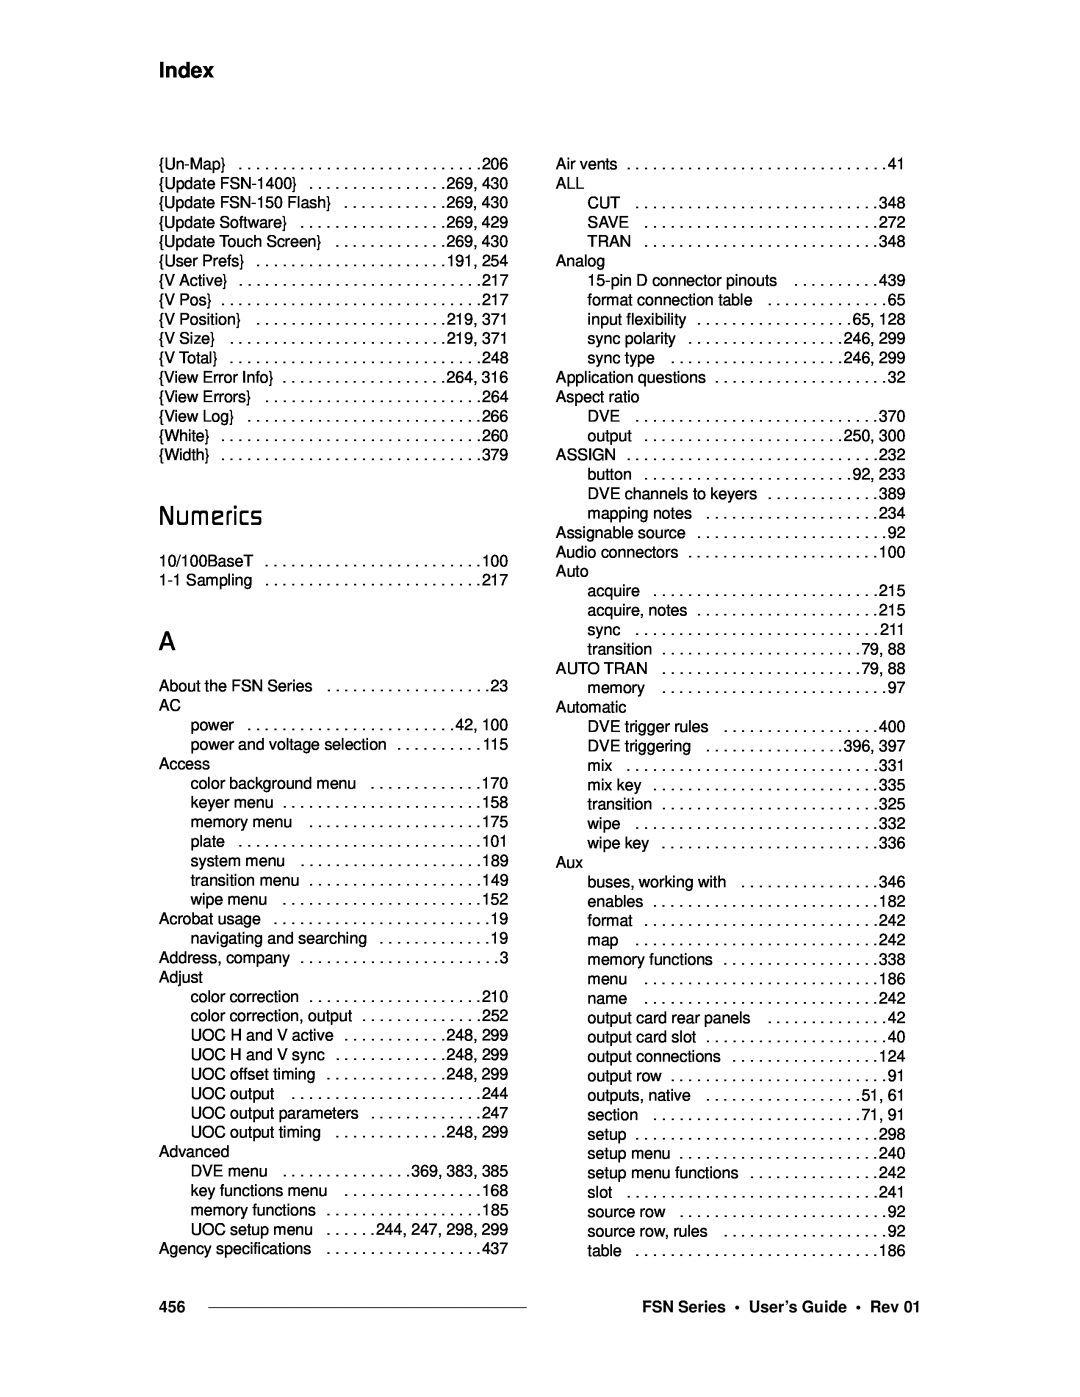 Barco 26-0702000-00 manual kìãÉêáÅë, Index, FSN Series • User’s Guide • Rev 